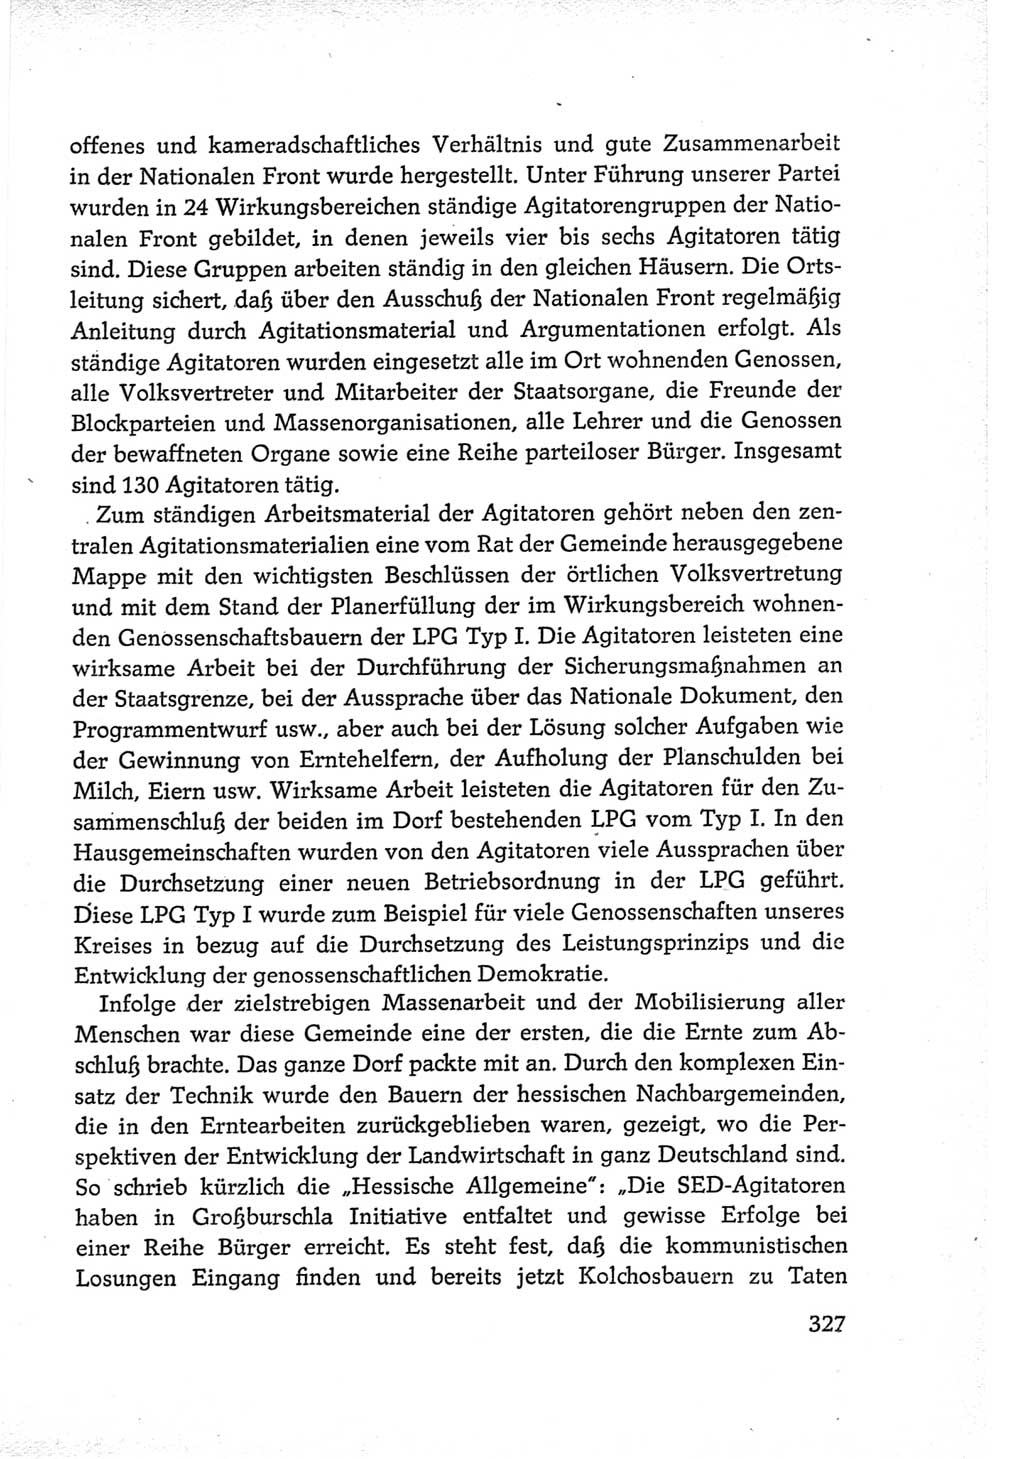 Protokoll der Verhandlungen des Ⅵ. Parteitages der Sozialistischen Einheitspartei Deutschlands (SED) [Deutsche Demokratische Republik (DDR)] 1963, Band Ⅲ, Seite 327 (Prot. Verh. Ⅵ. PT SED DDR 1963, Bd. Ⅲ, S. 327)